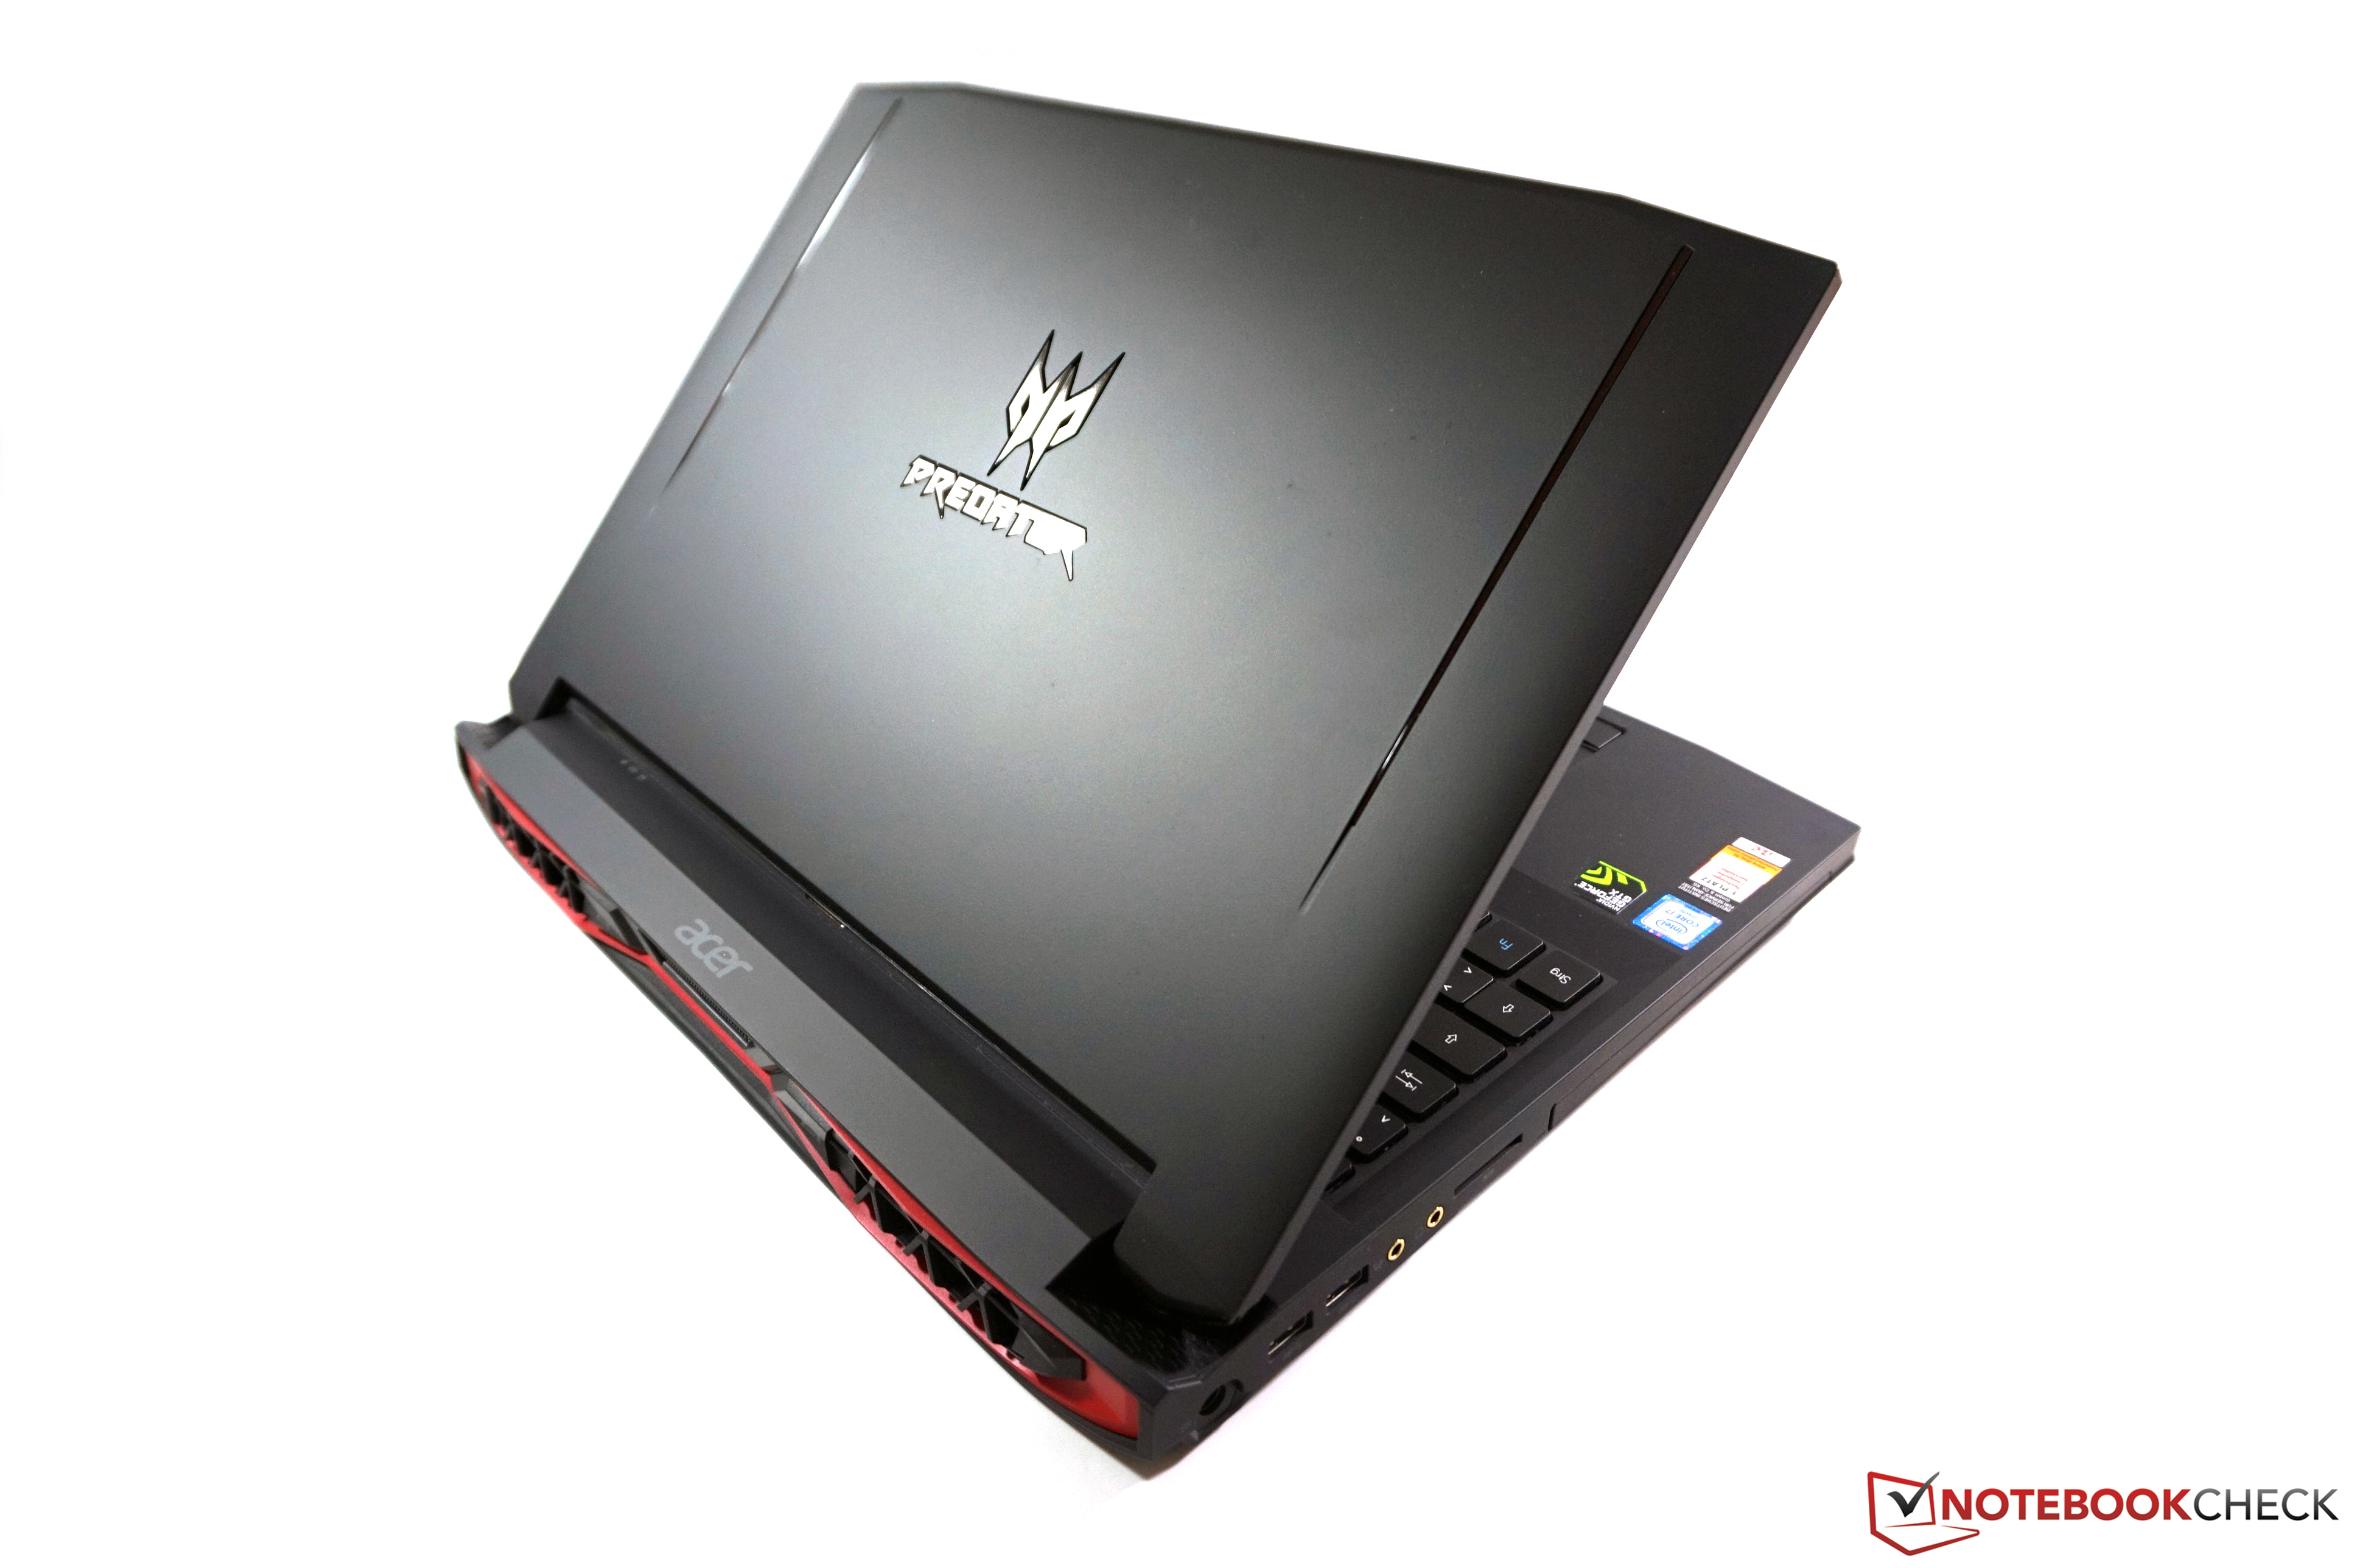 Купить Ноутбук Acer Predator 15 G9-591-79ke